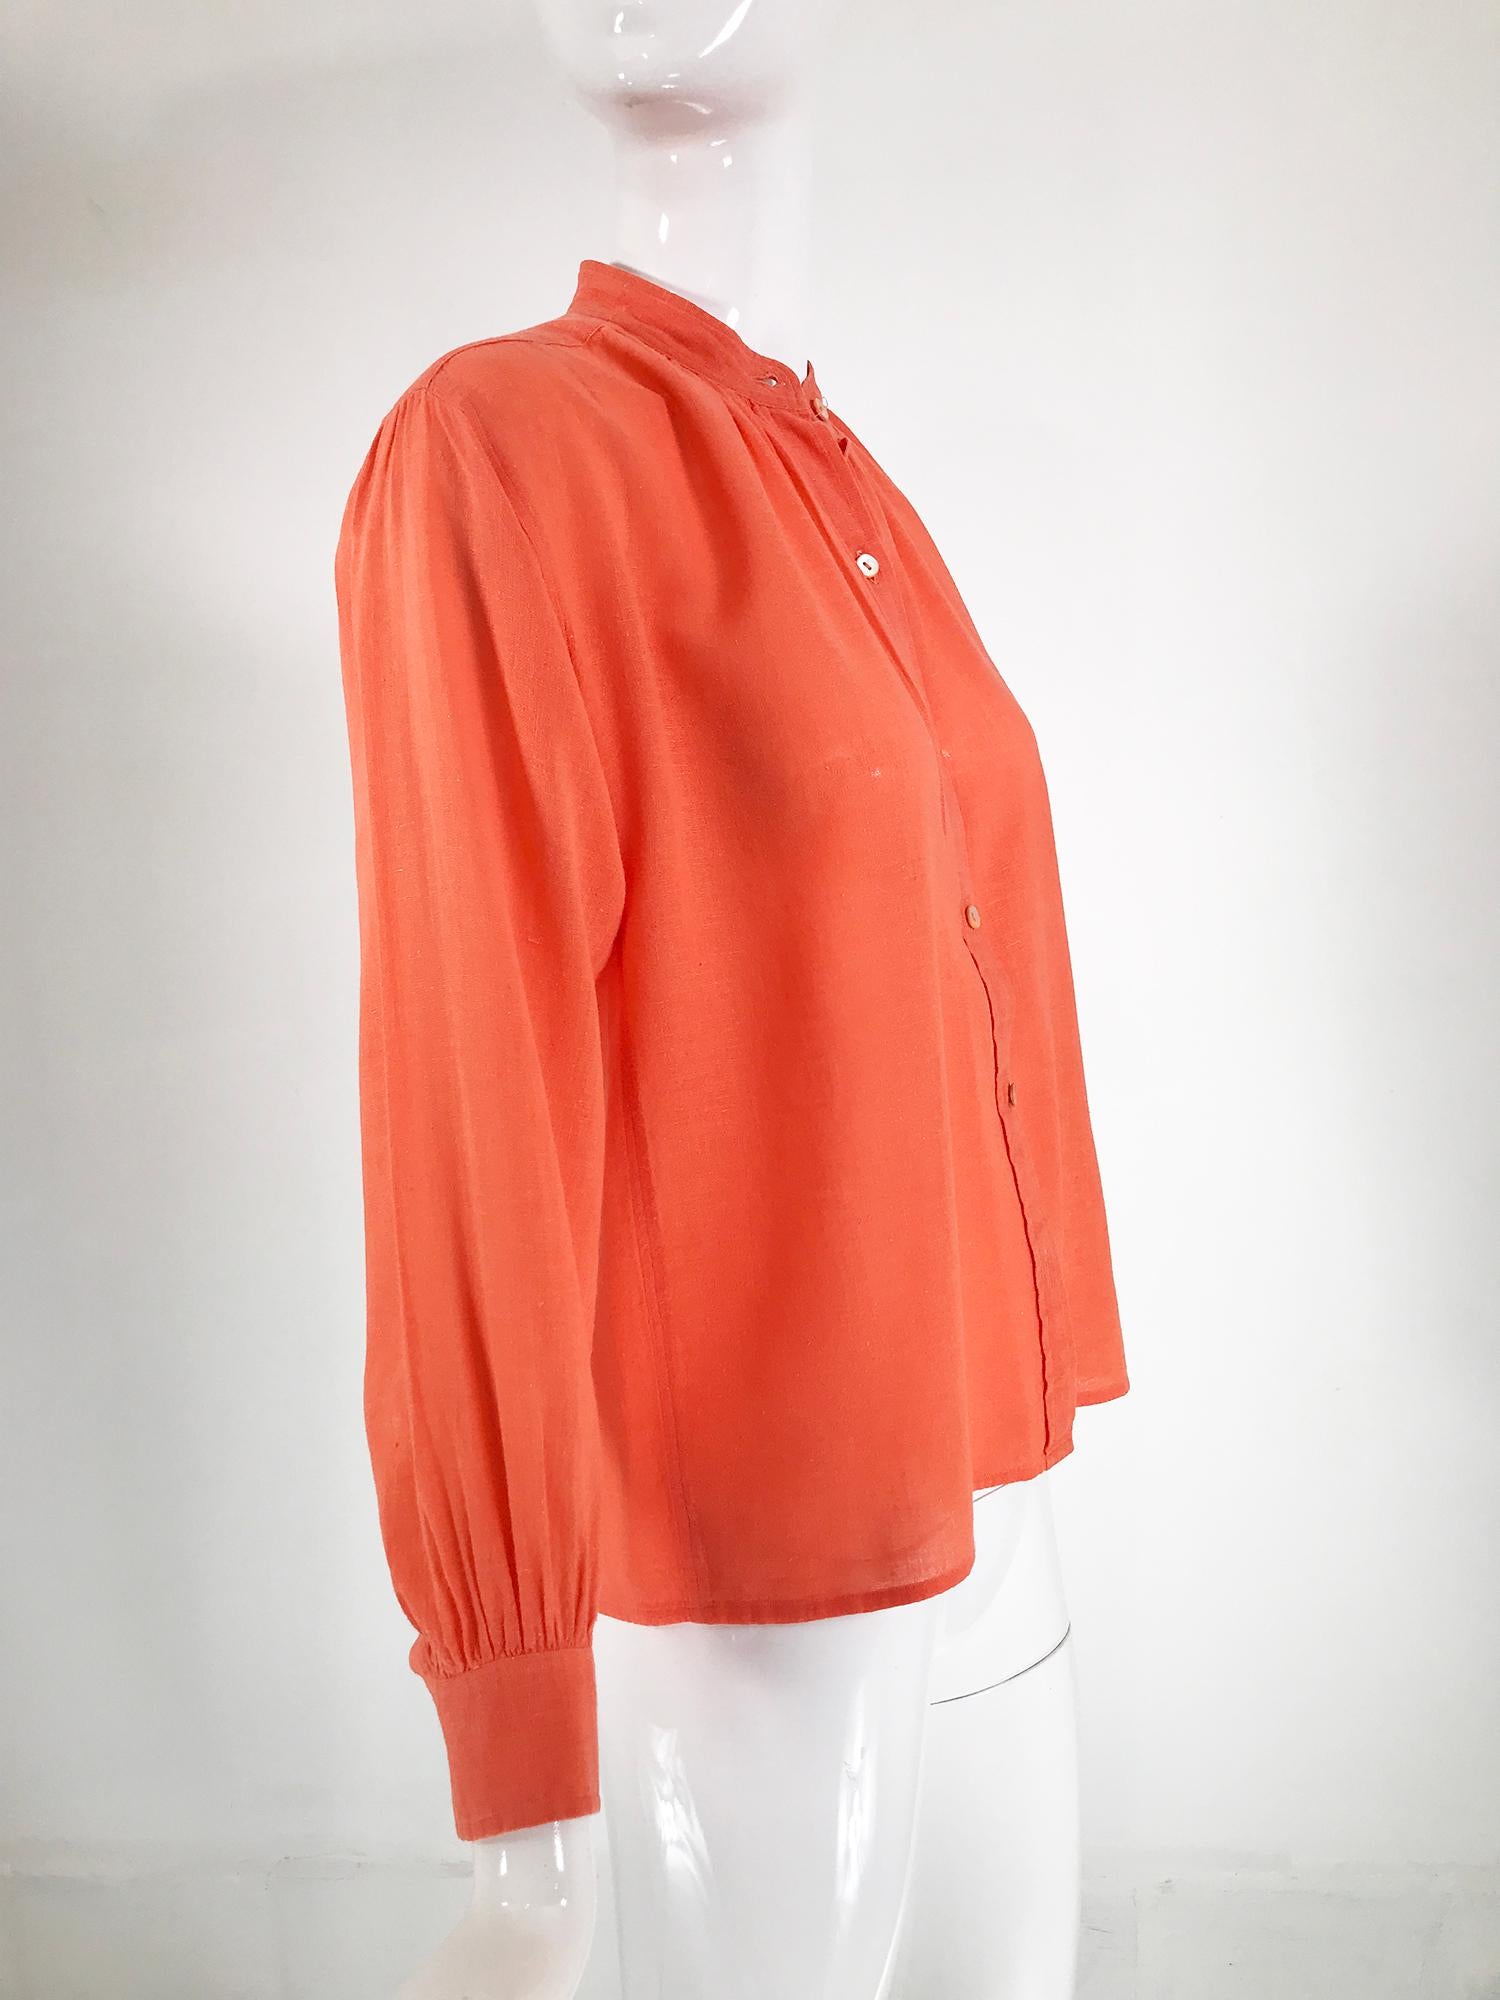 Yves Saint Laurent Rive Gauche Orange Cotton Gauze Blouse 1960s 1